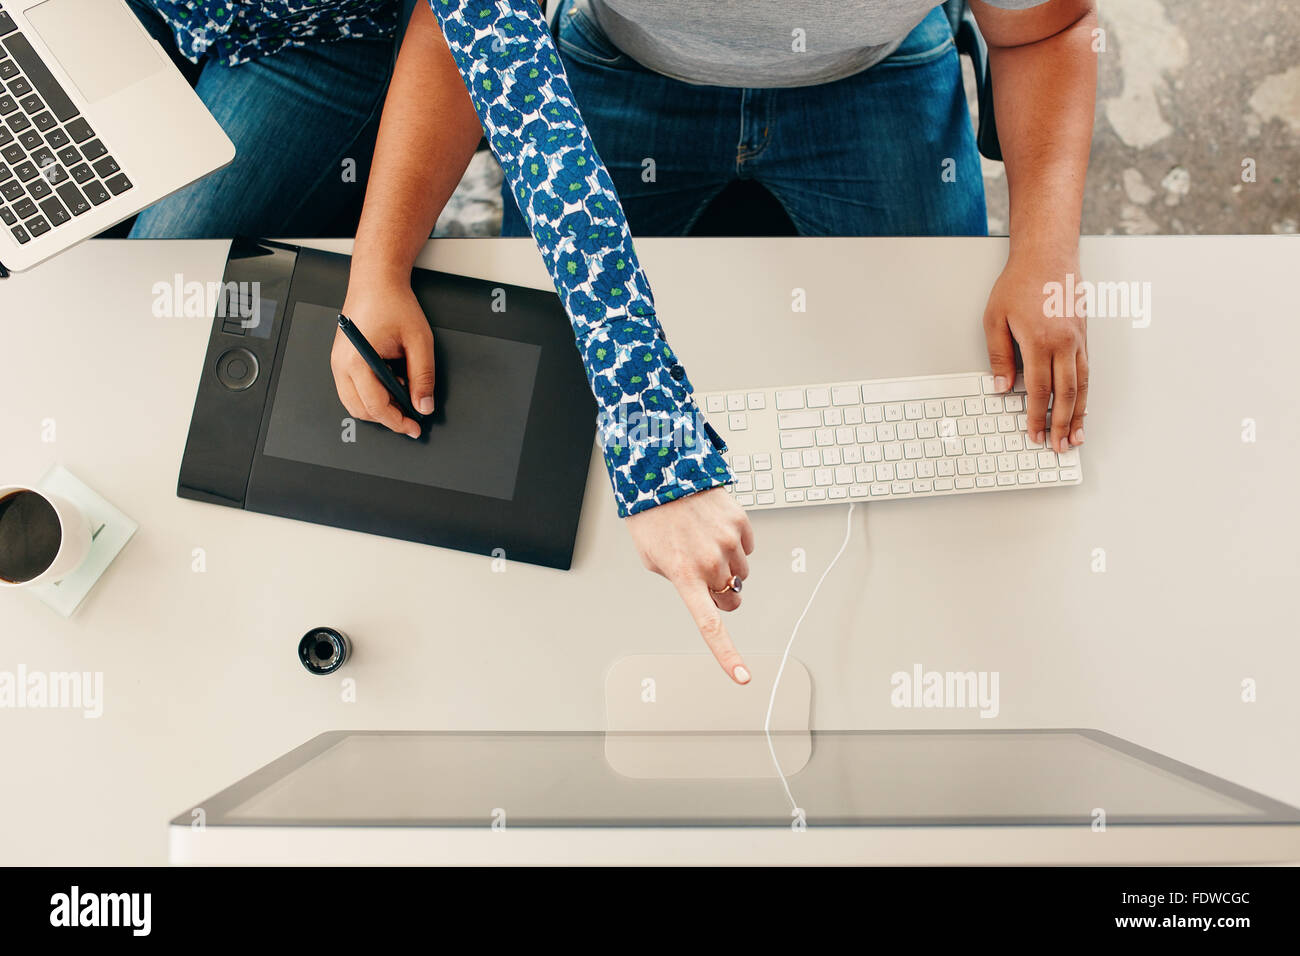 Vista dall'alto ritagliata colpo di un uomo con tavoletta grafica digitale con lo stilo e la tastiera del computer, con la donna puntando al computer mo Foto Stock